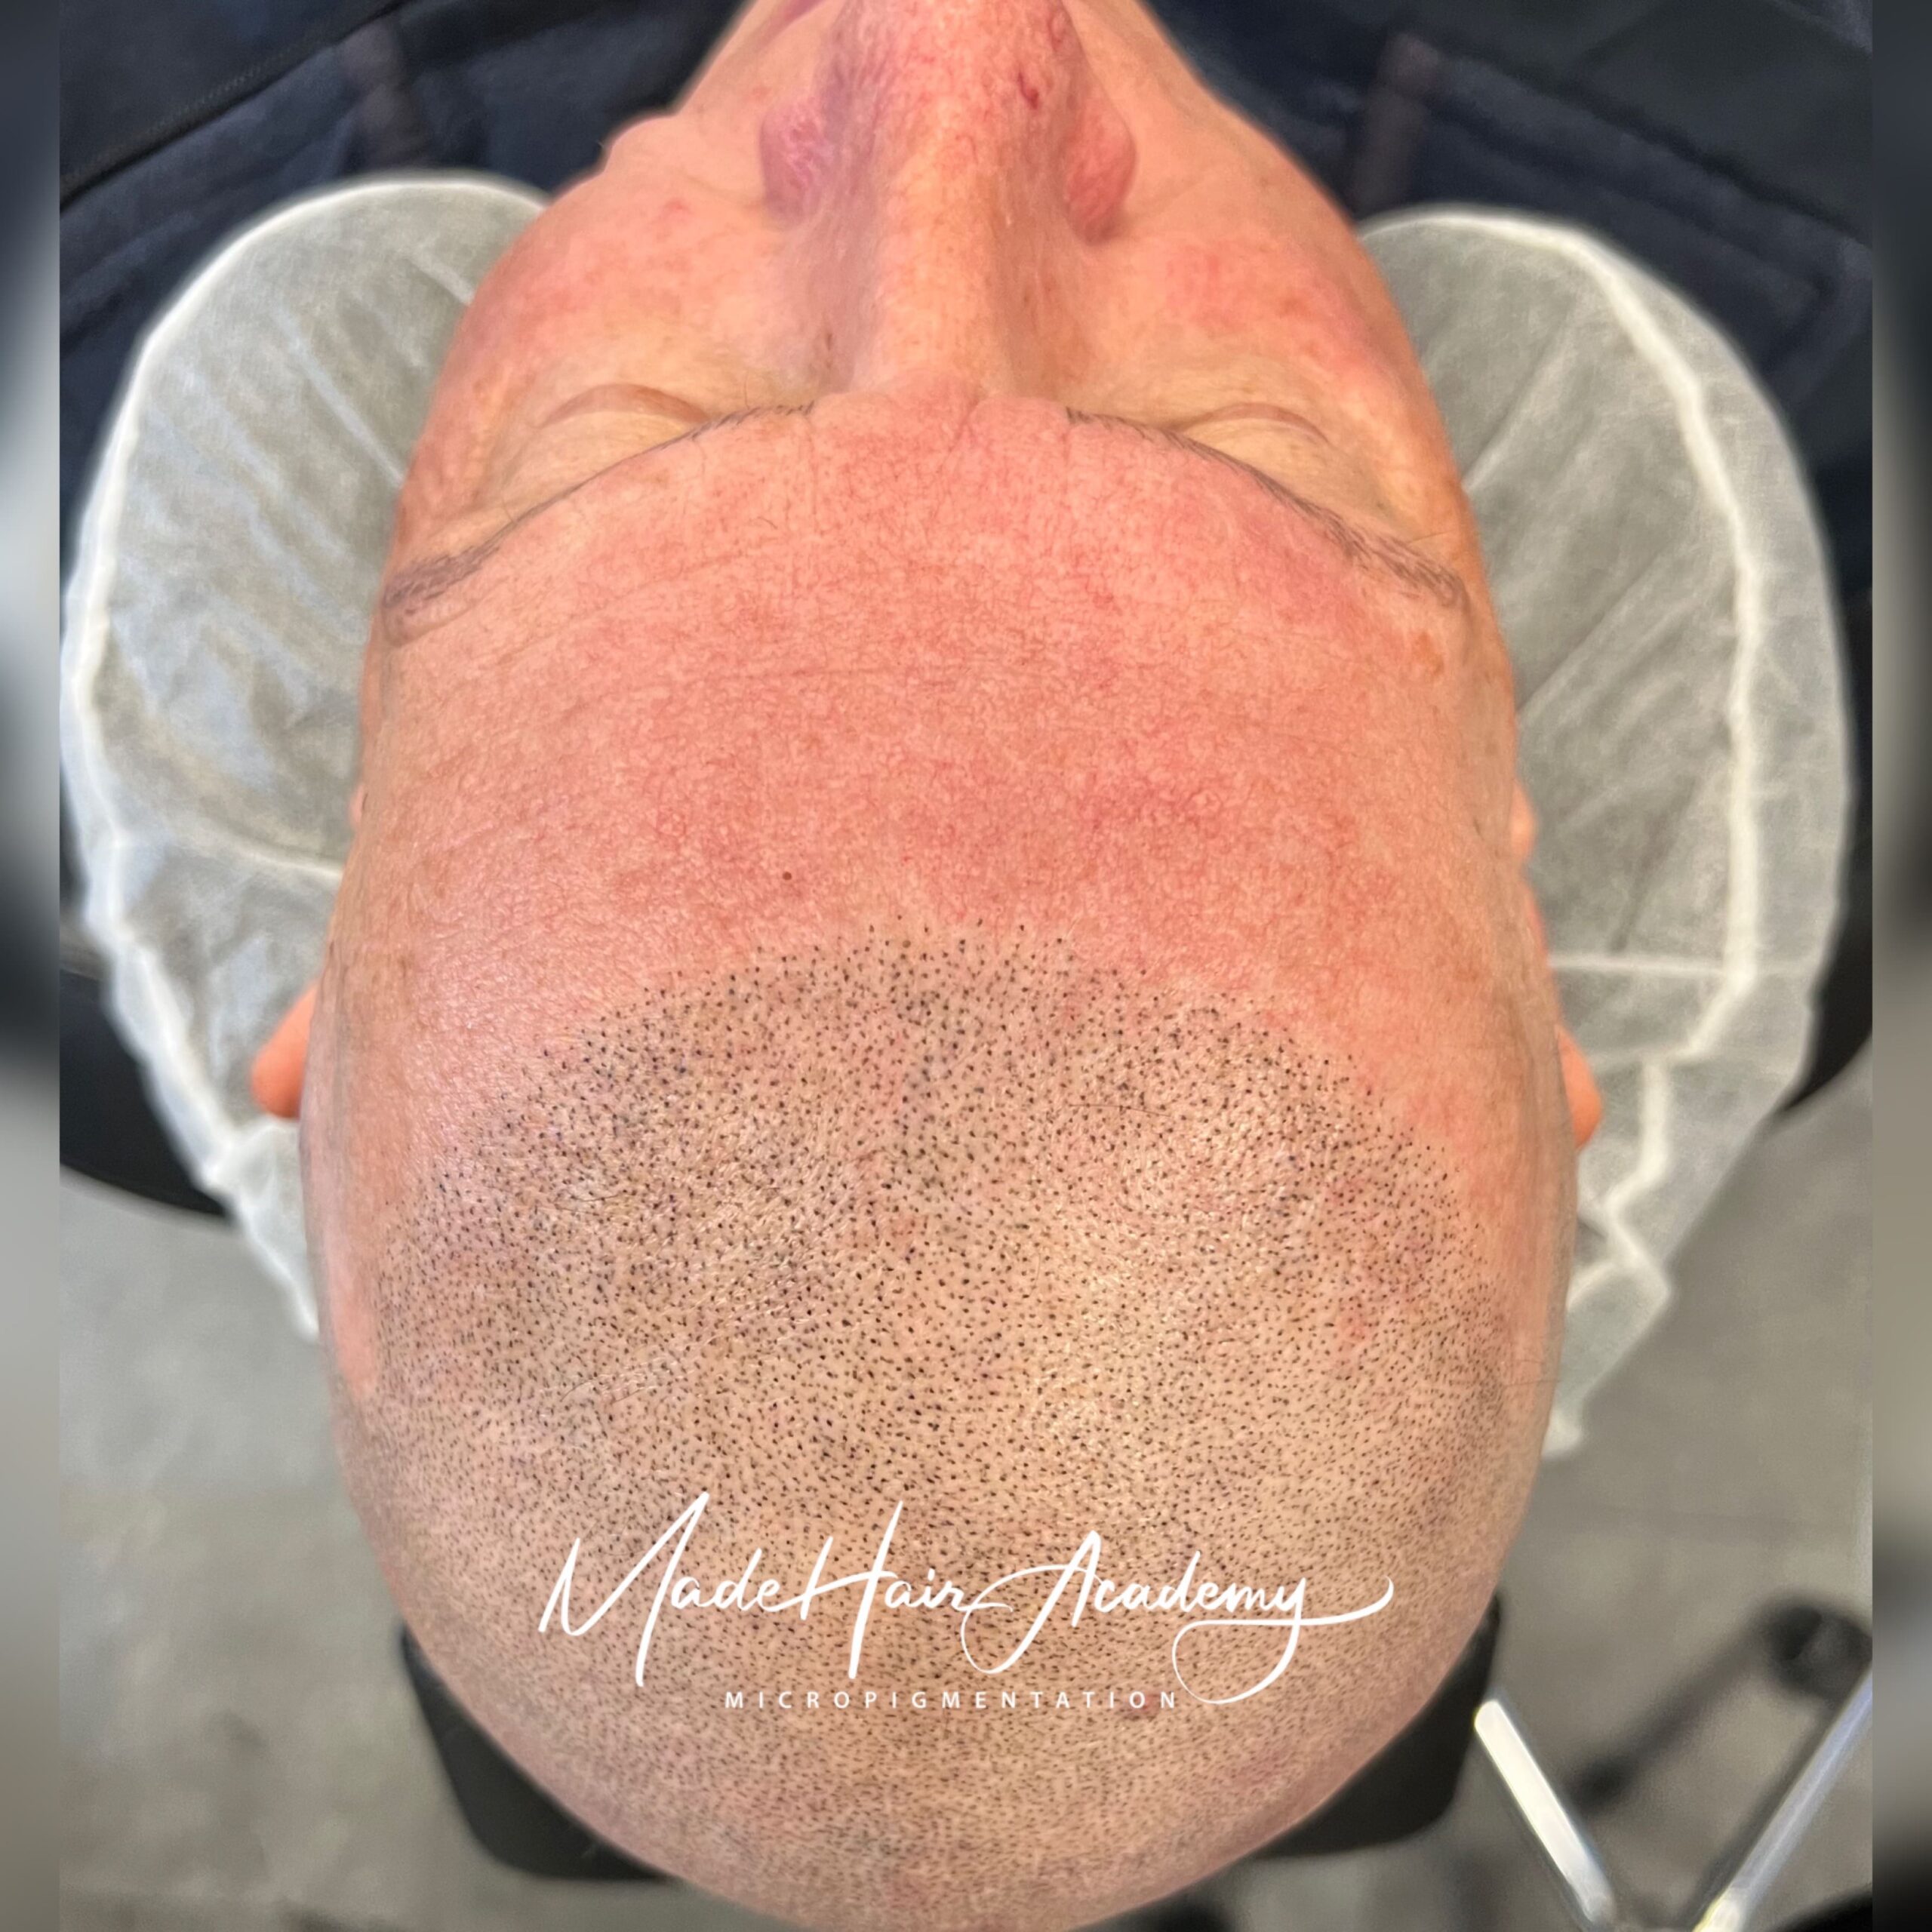 Made hair academy - Alopecia Behandling